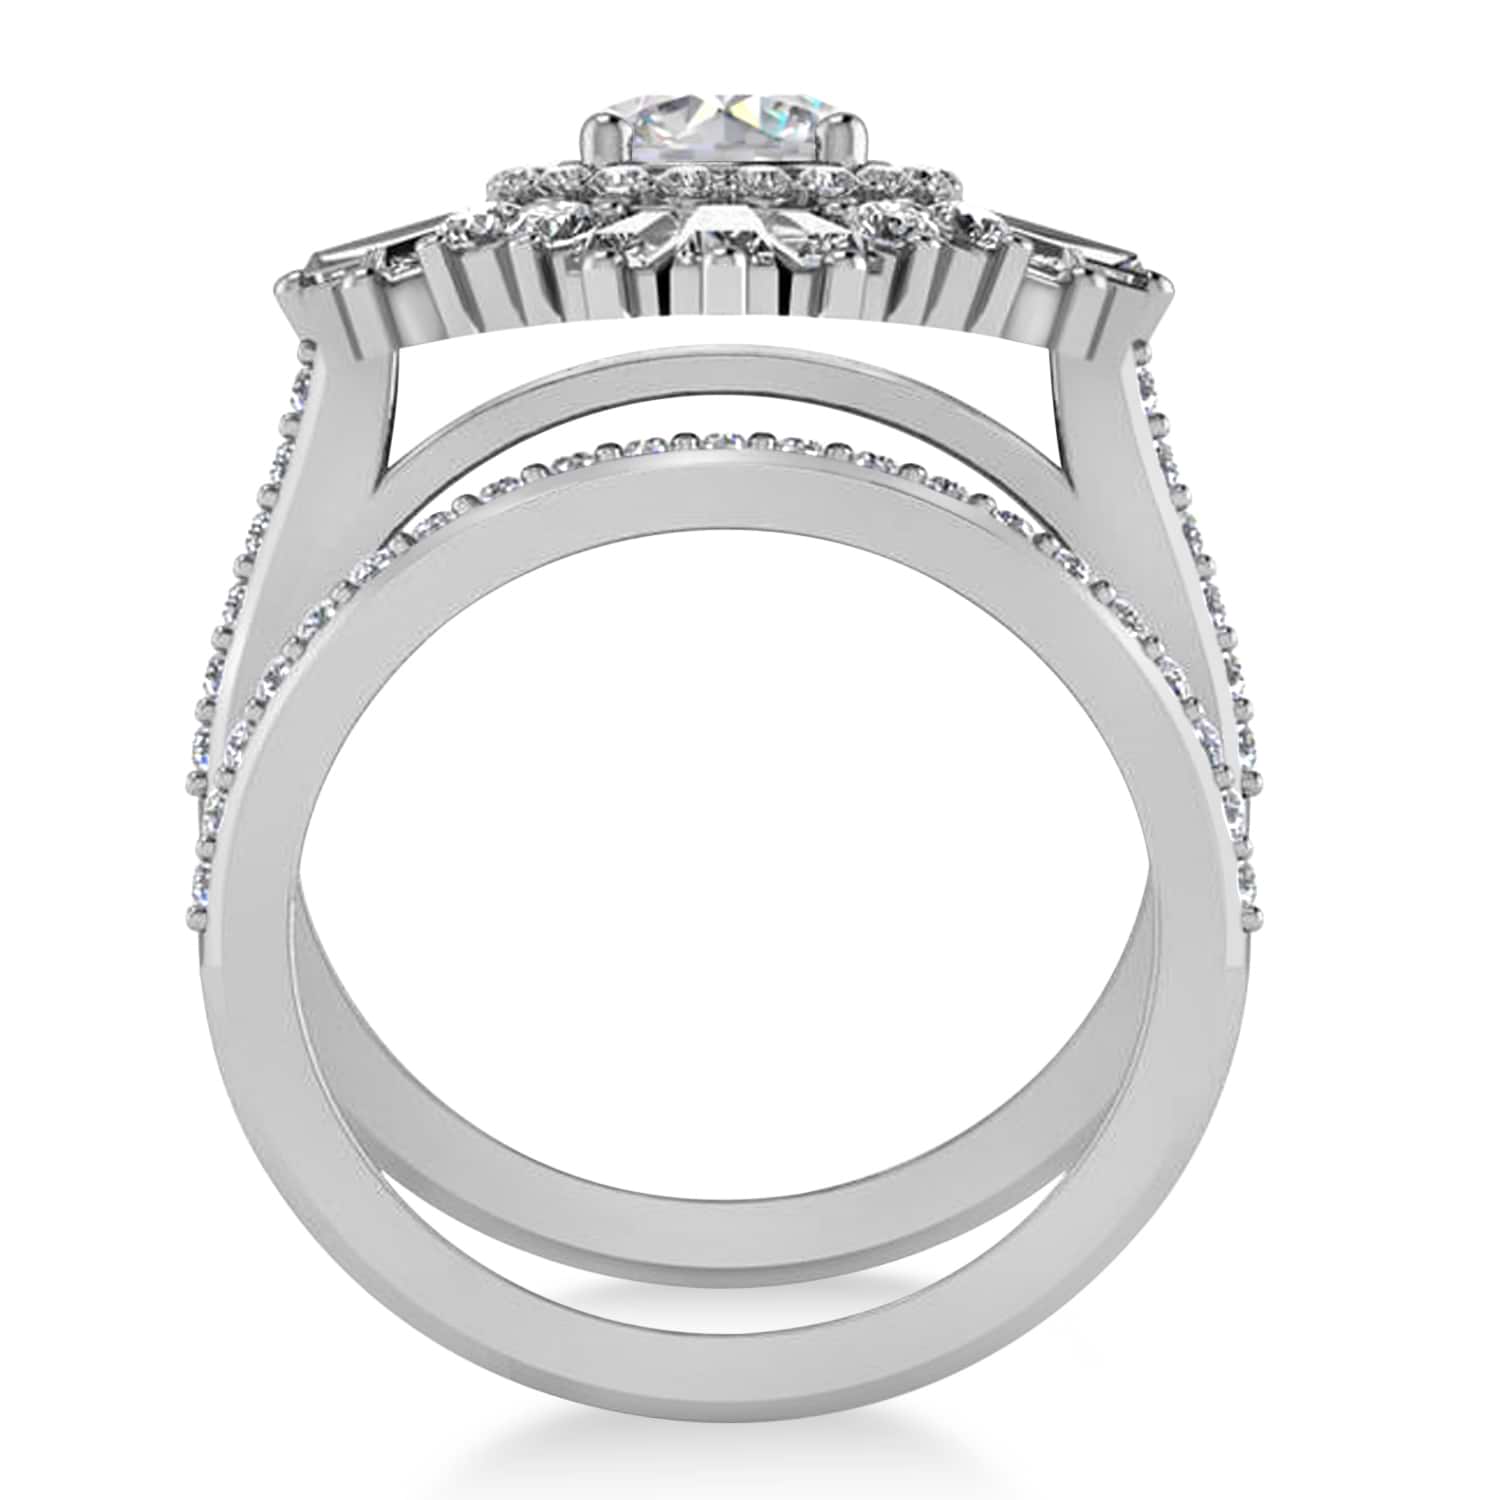 Moissanite & Diamond Ballerina Engagement Ring 14k White Gold (2.74 ctw)